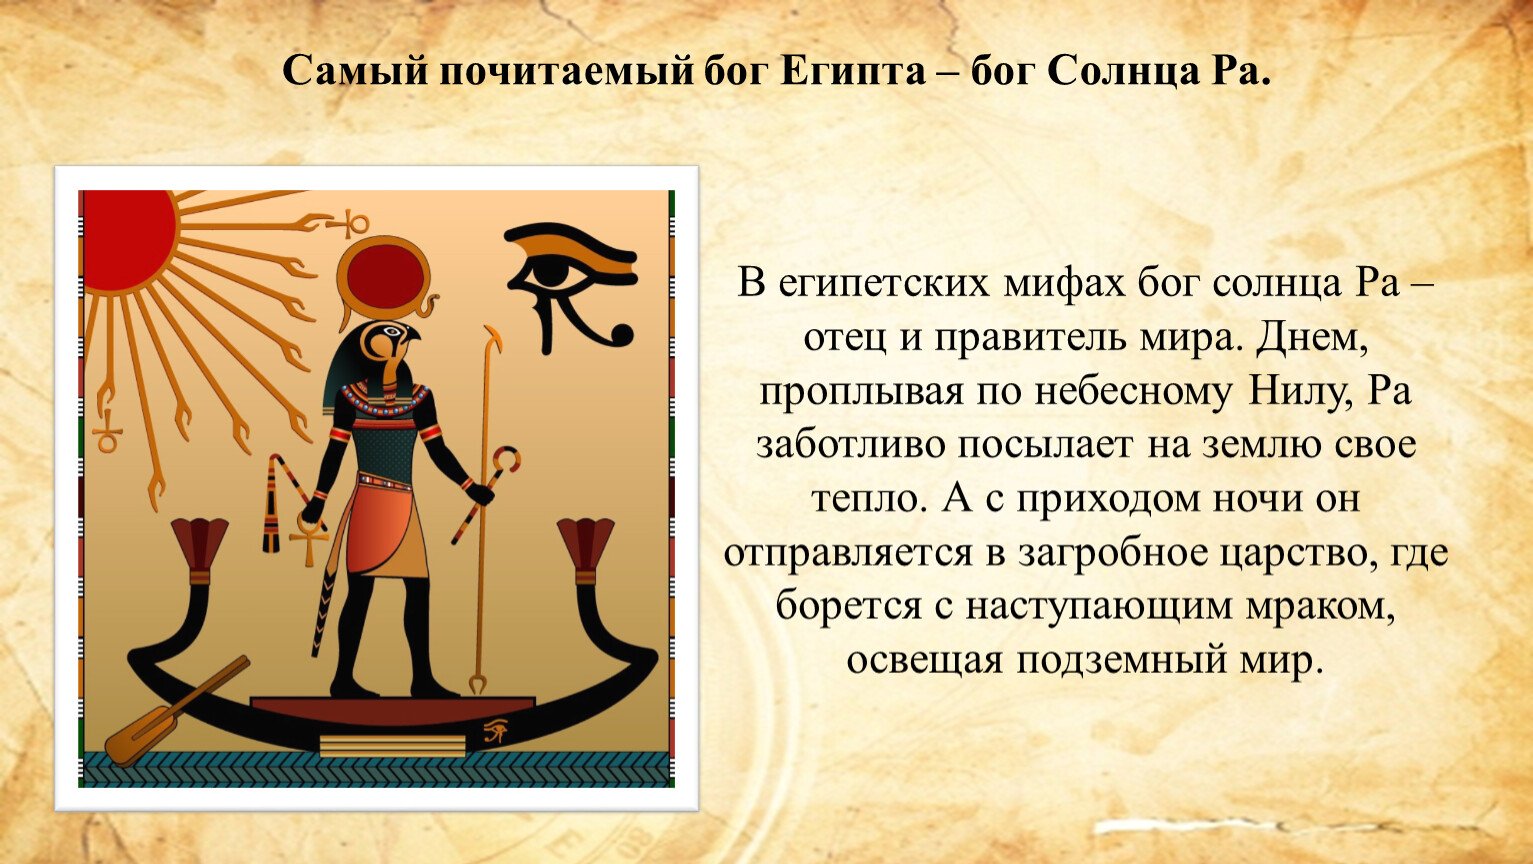 Амон ра это история. Мифы древнего Египта Легенда о Боге ра. Бог ра в древнем Египте 5 класс. Бог Амон в древнем Египте. Бог Амон ра в древнем Египте.